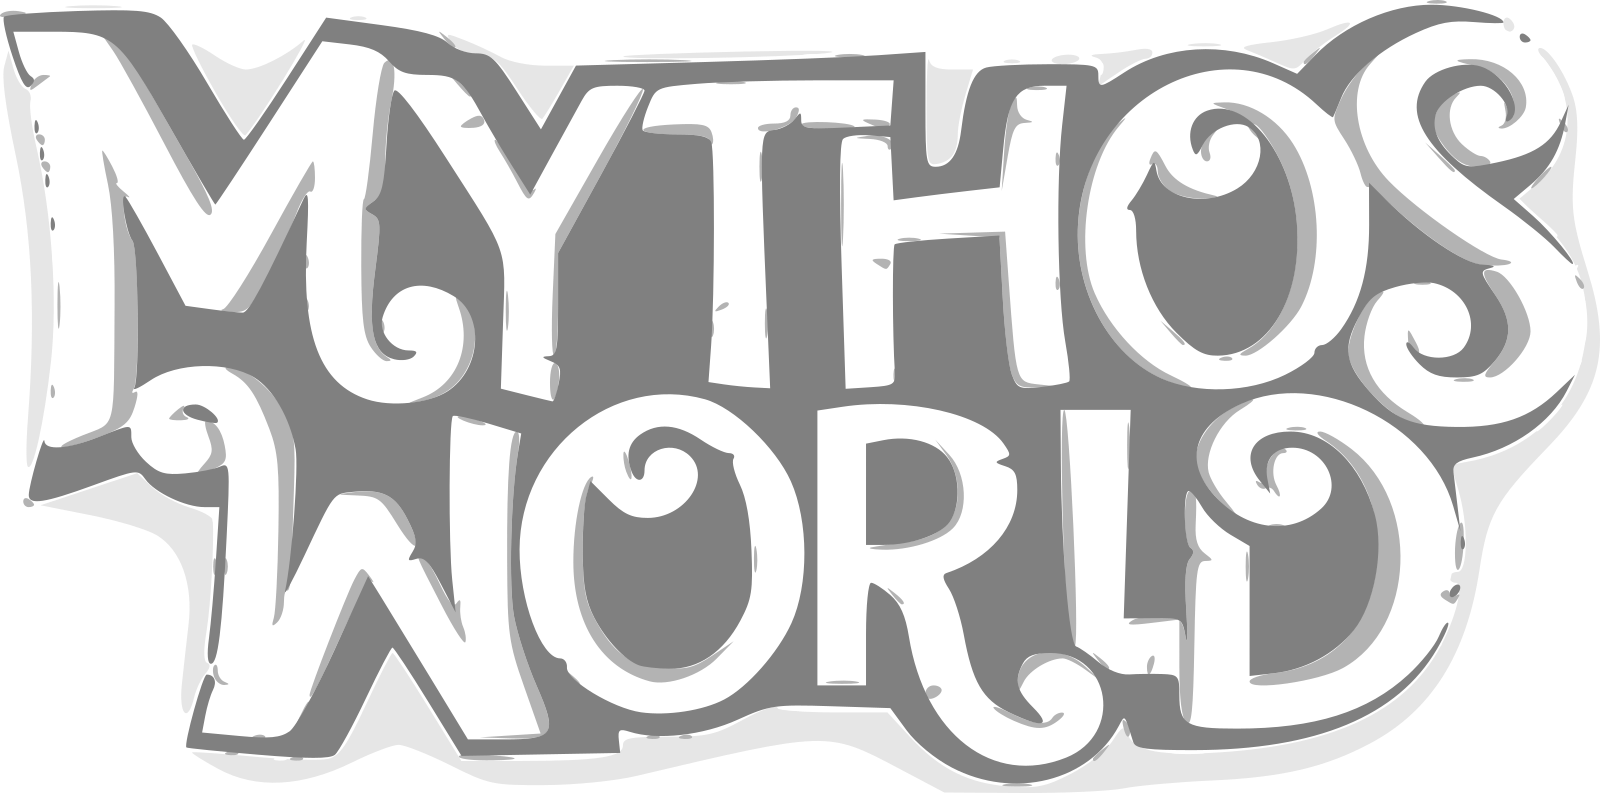 MythosWorld